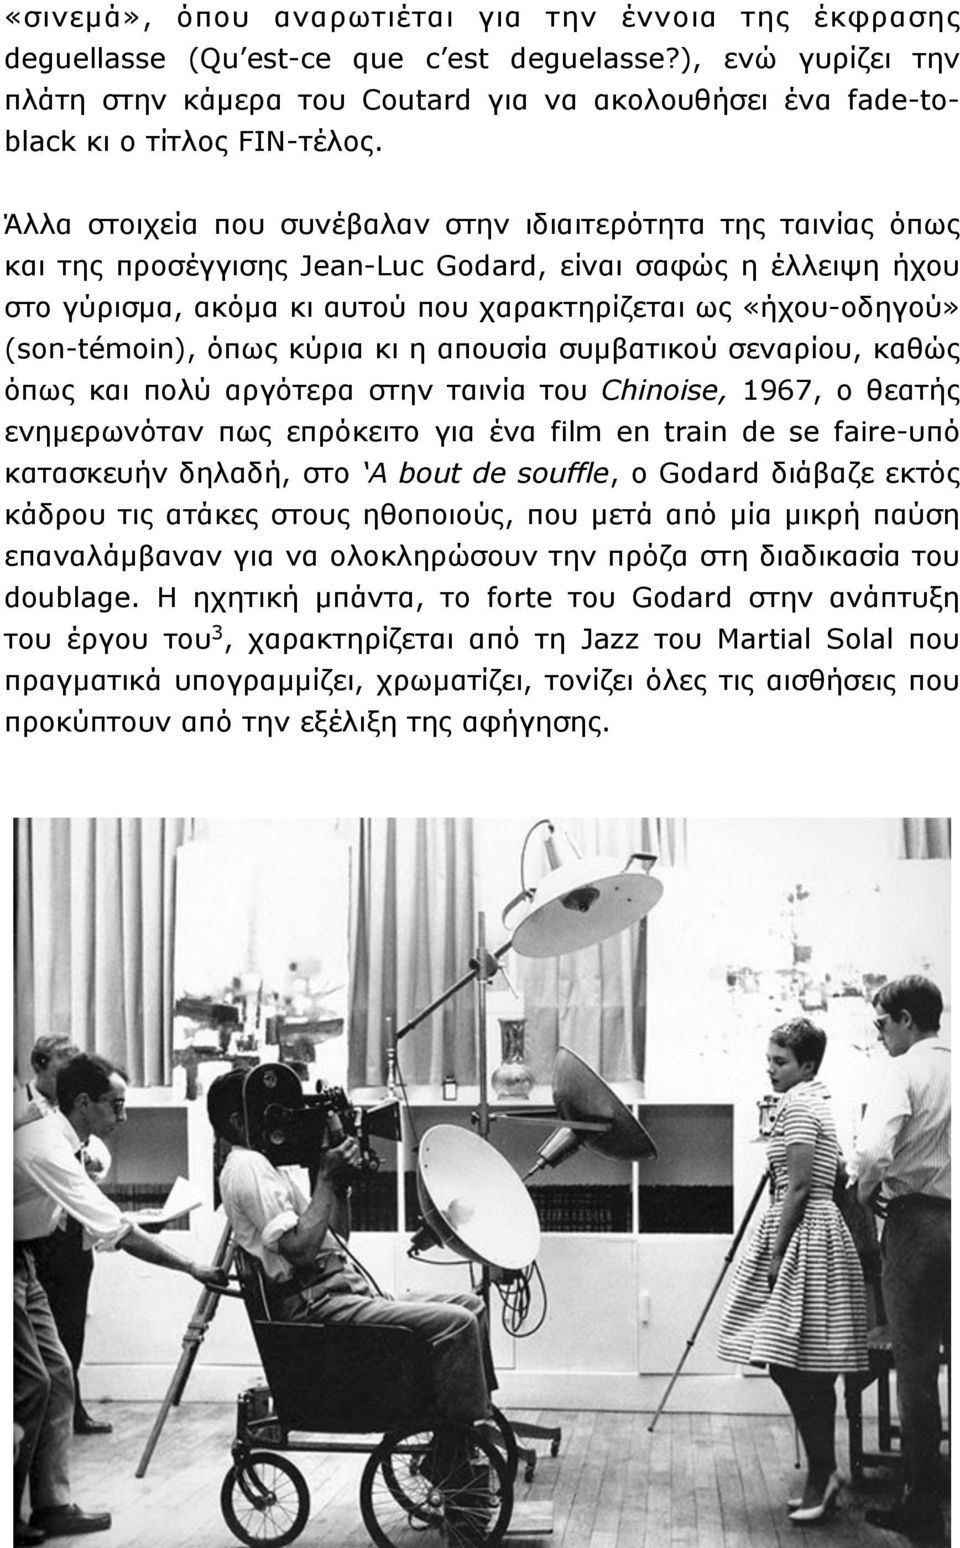 Άλλα στοιχεία που συνέβαλαν στην ιδιαιτερότητα της ταινίας όπως και της προσέγγισης Jean-Luc Godard, είναι σαφώς η έλλειψη ήχου στο γύρισµα, ακόµα κι αυτού που χαρακτηρίζεται ως «ήχου-οδηγού»